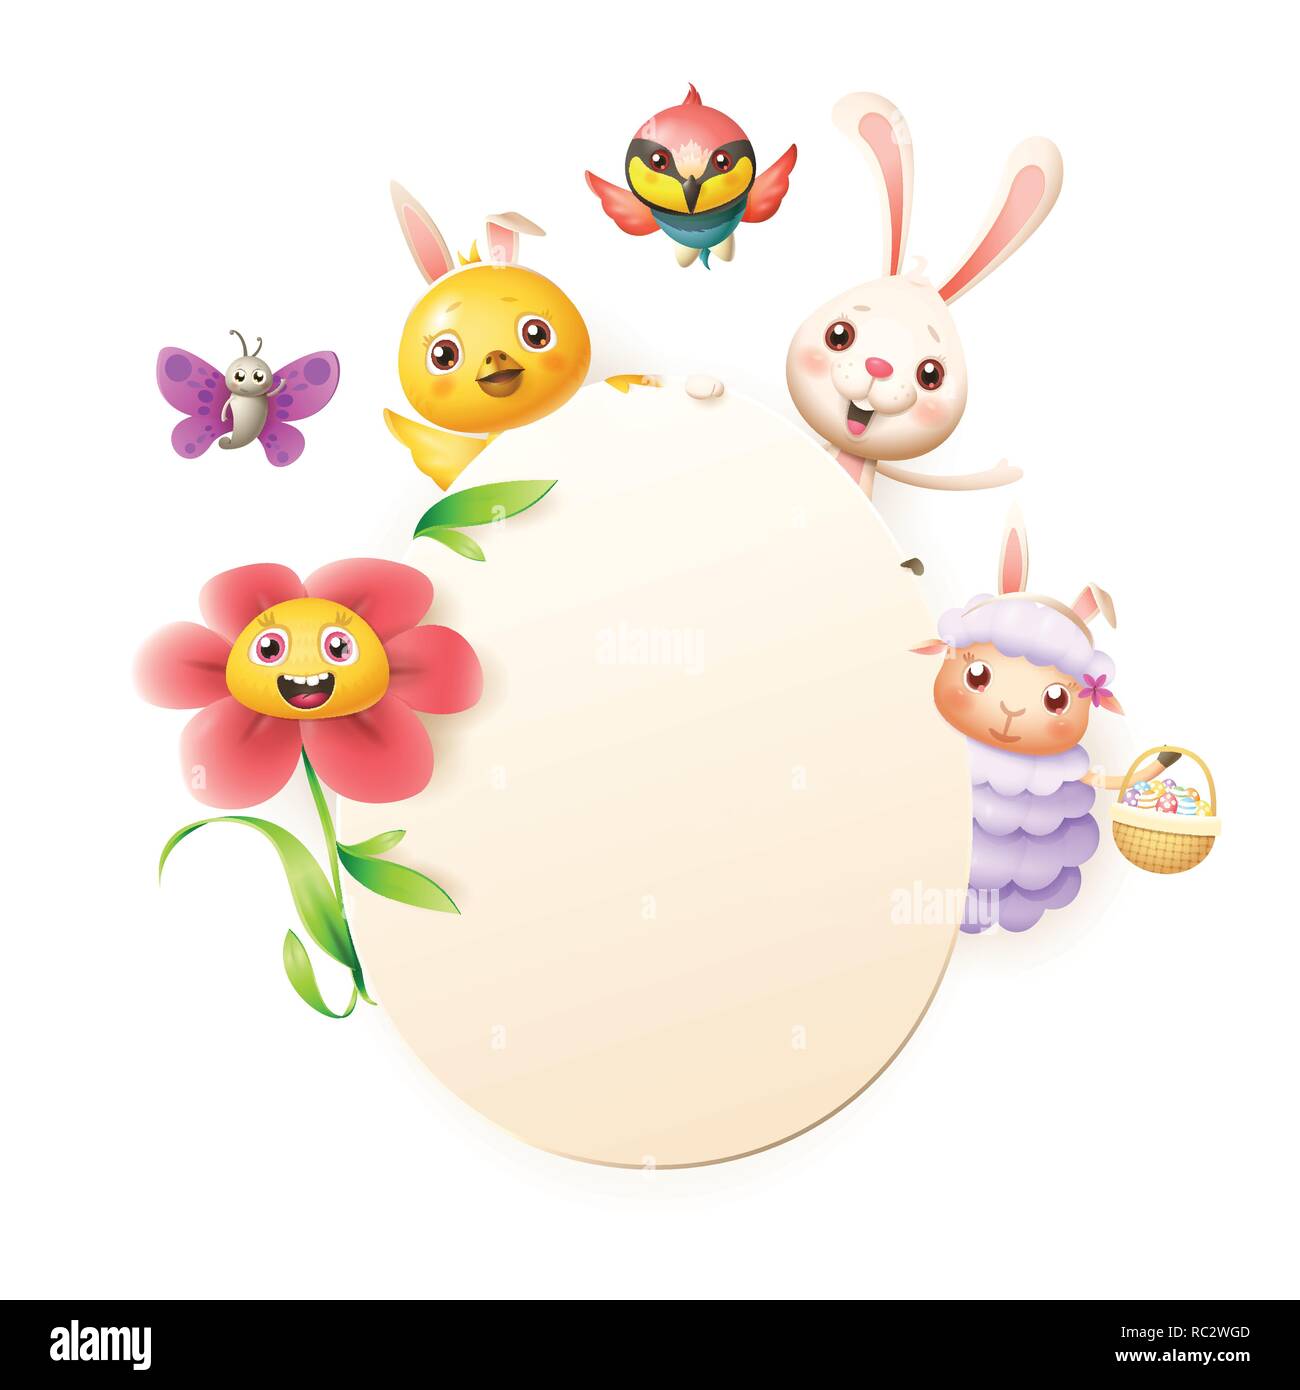 Modèle de carte de vœux de Pâques - Lapin de Pâques, poulet, mouton, fleurs oiseaux guêpier et papillon fêter Pâques autour d'egg - isolé sur blanc - em Illustration de Vecteur